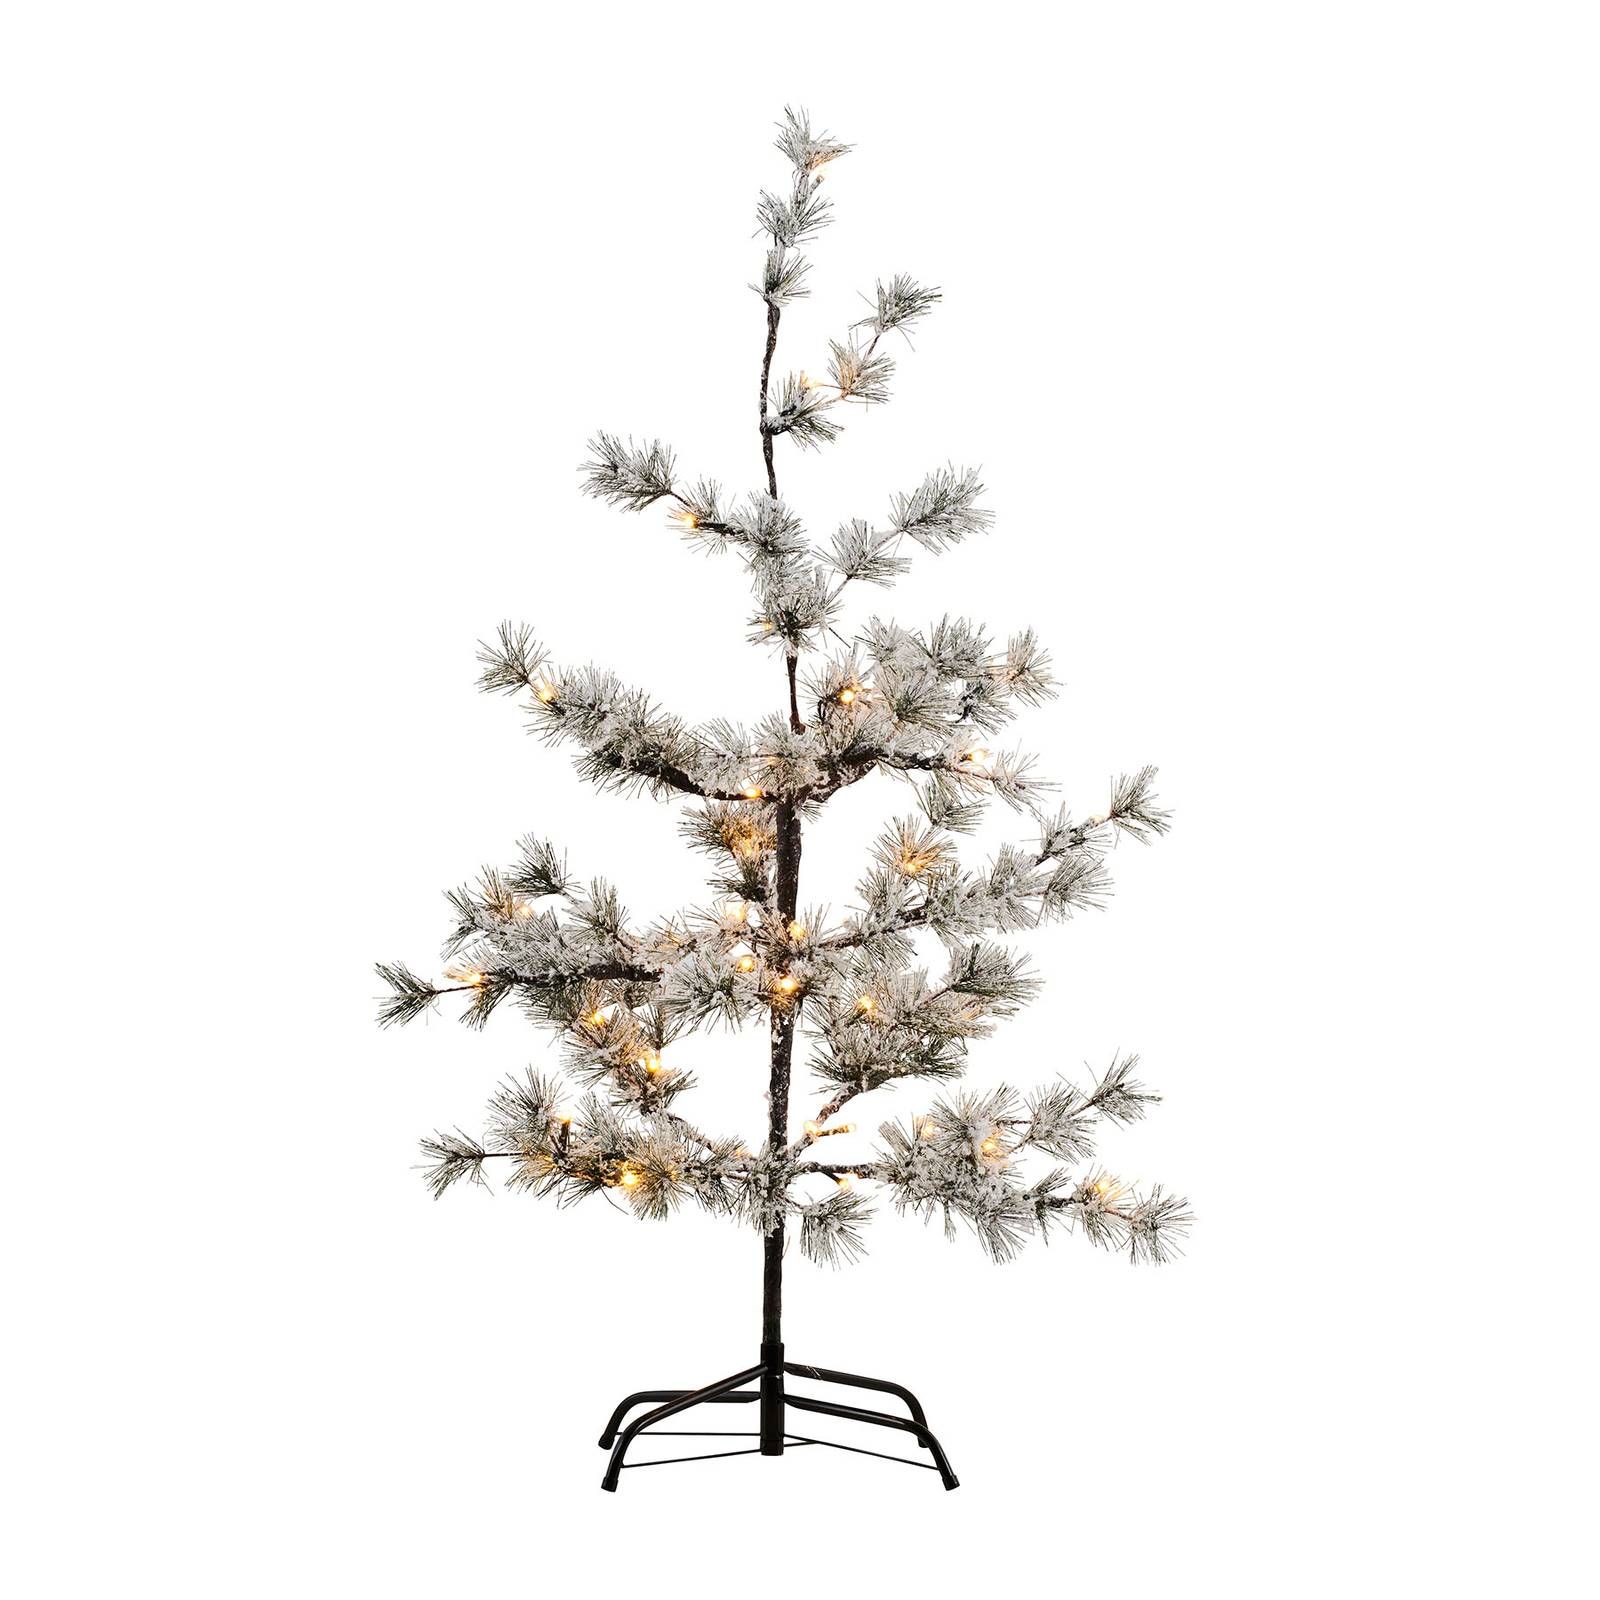 Sirius LED strom Alfi, výška 90 cm, ovládaný batériou, plast, kov, K: 90cm